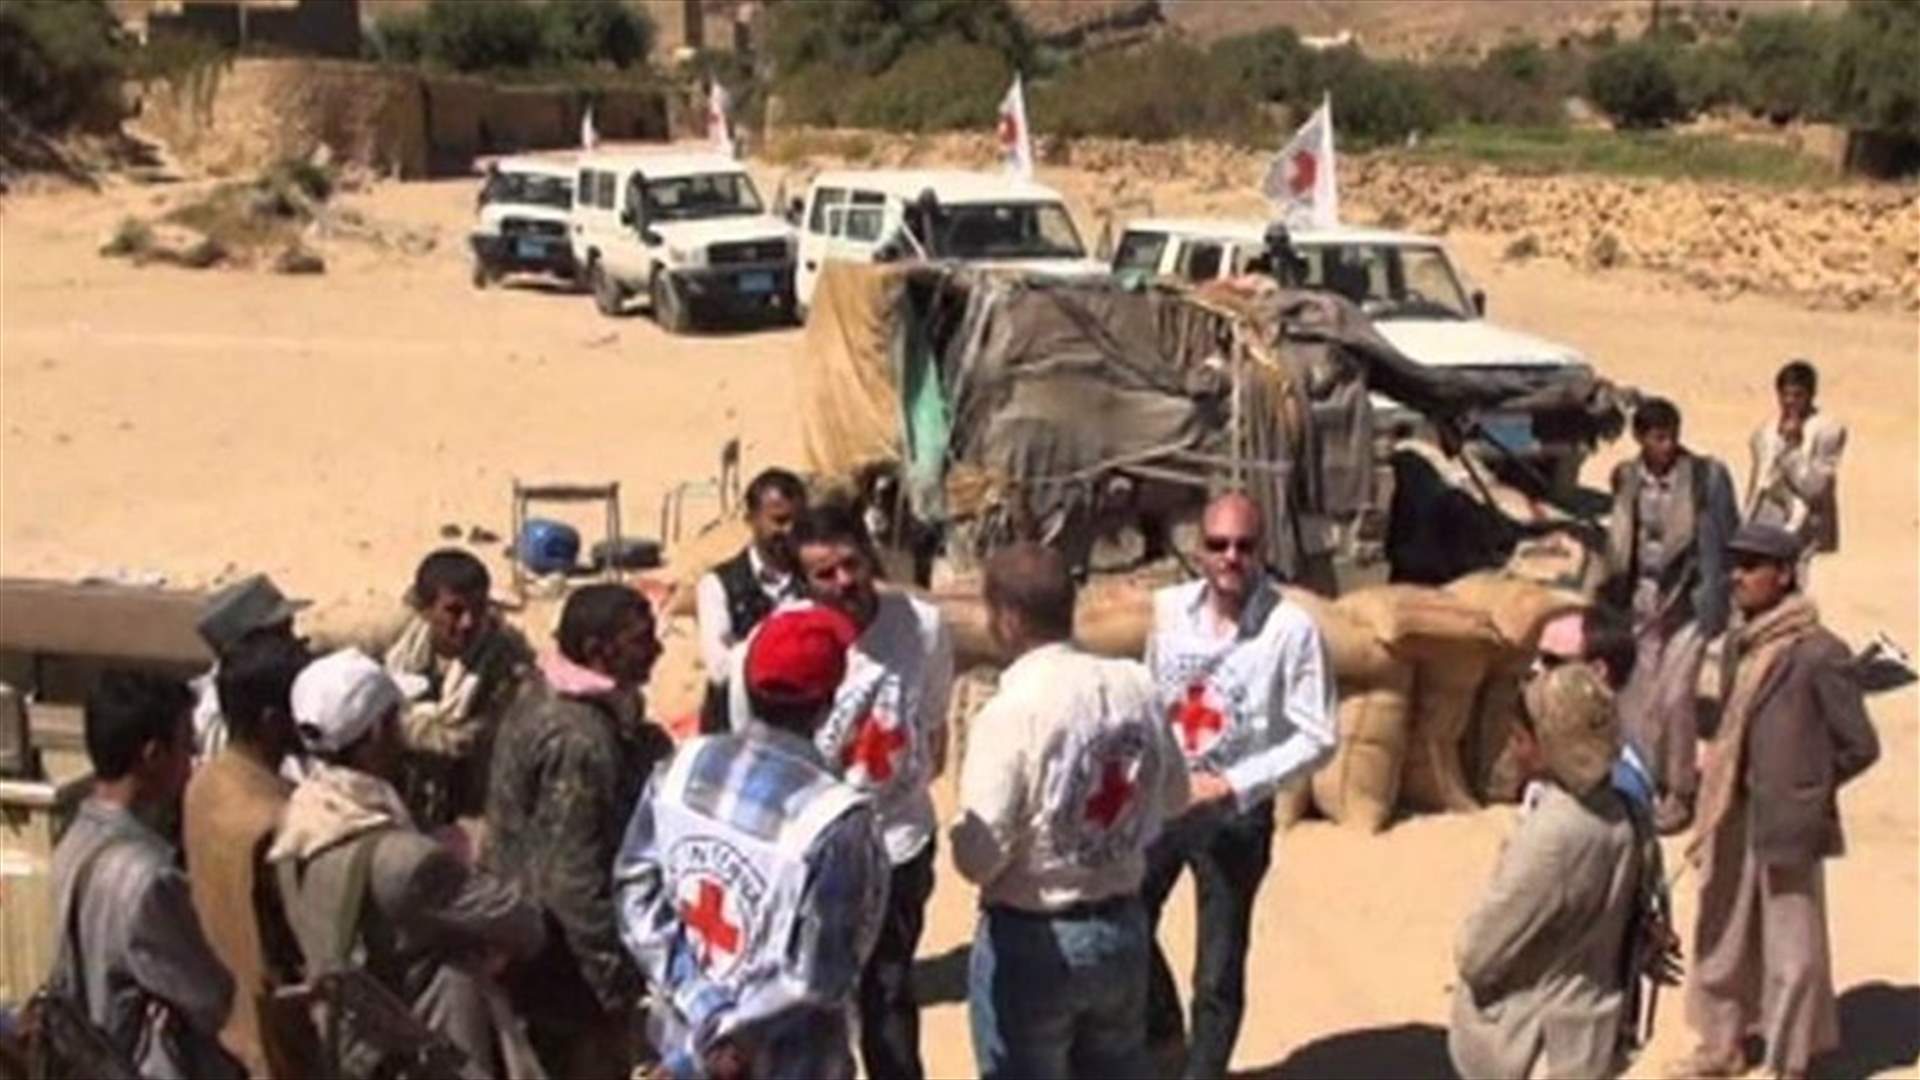 Lebanese Red Cross employee shot dead in Yemen